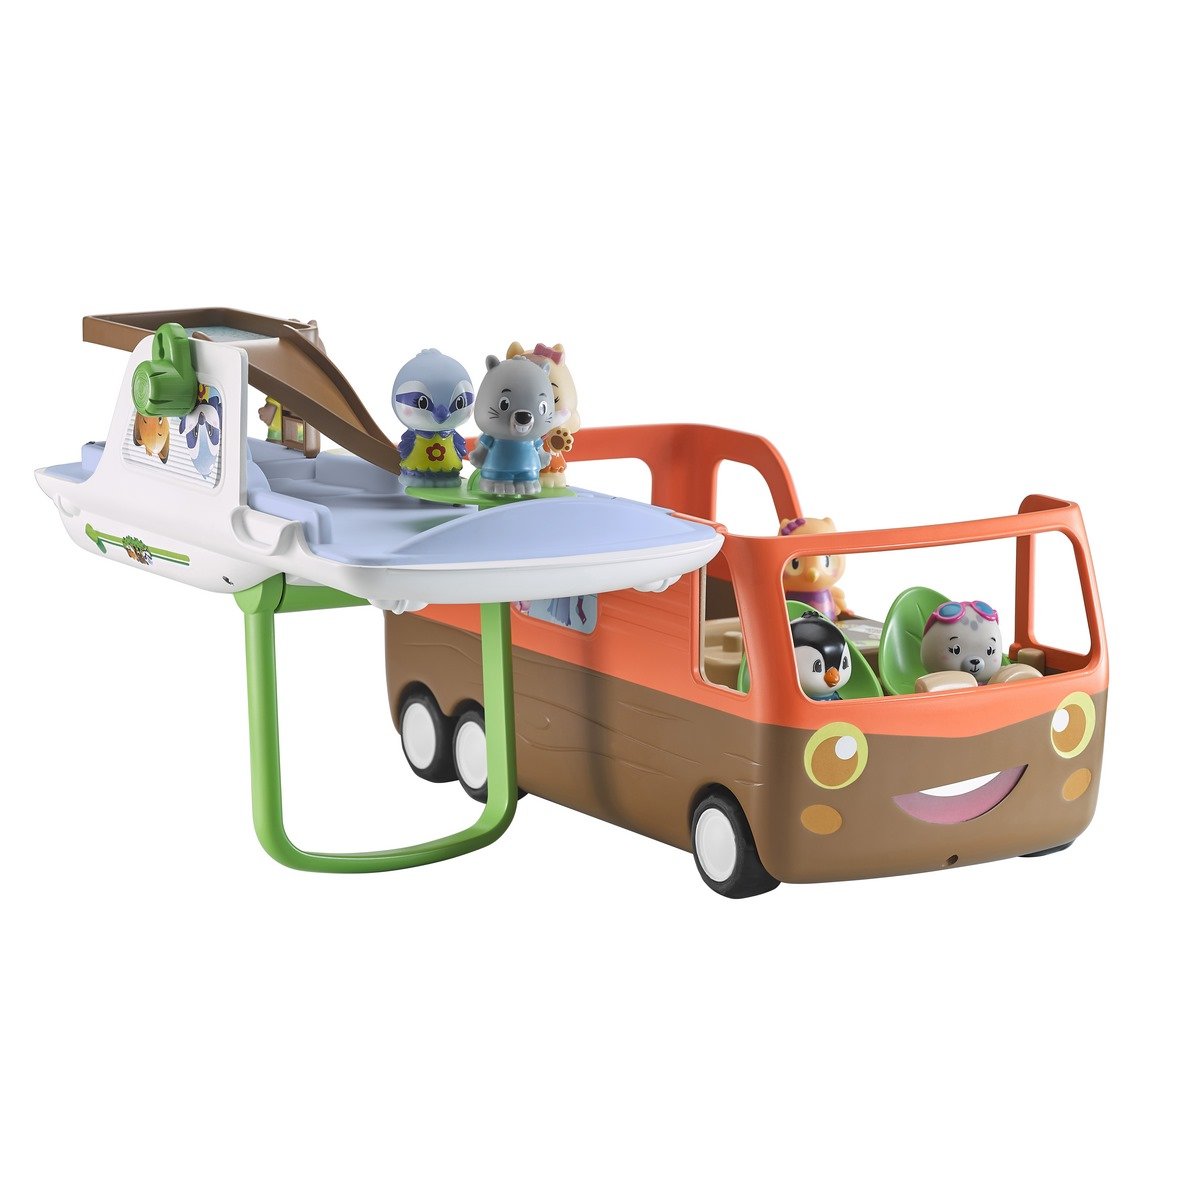 Klorofil Le camping-car, le jouet dont rêvent les enfants pour voyager -  Équipements et accessoires